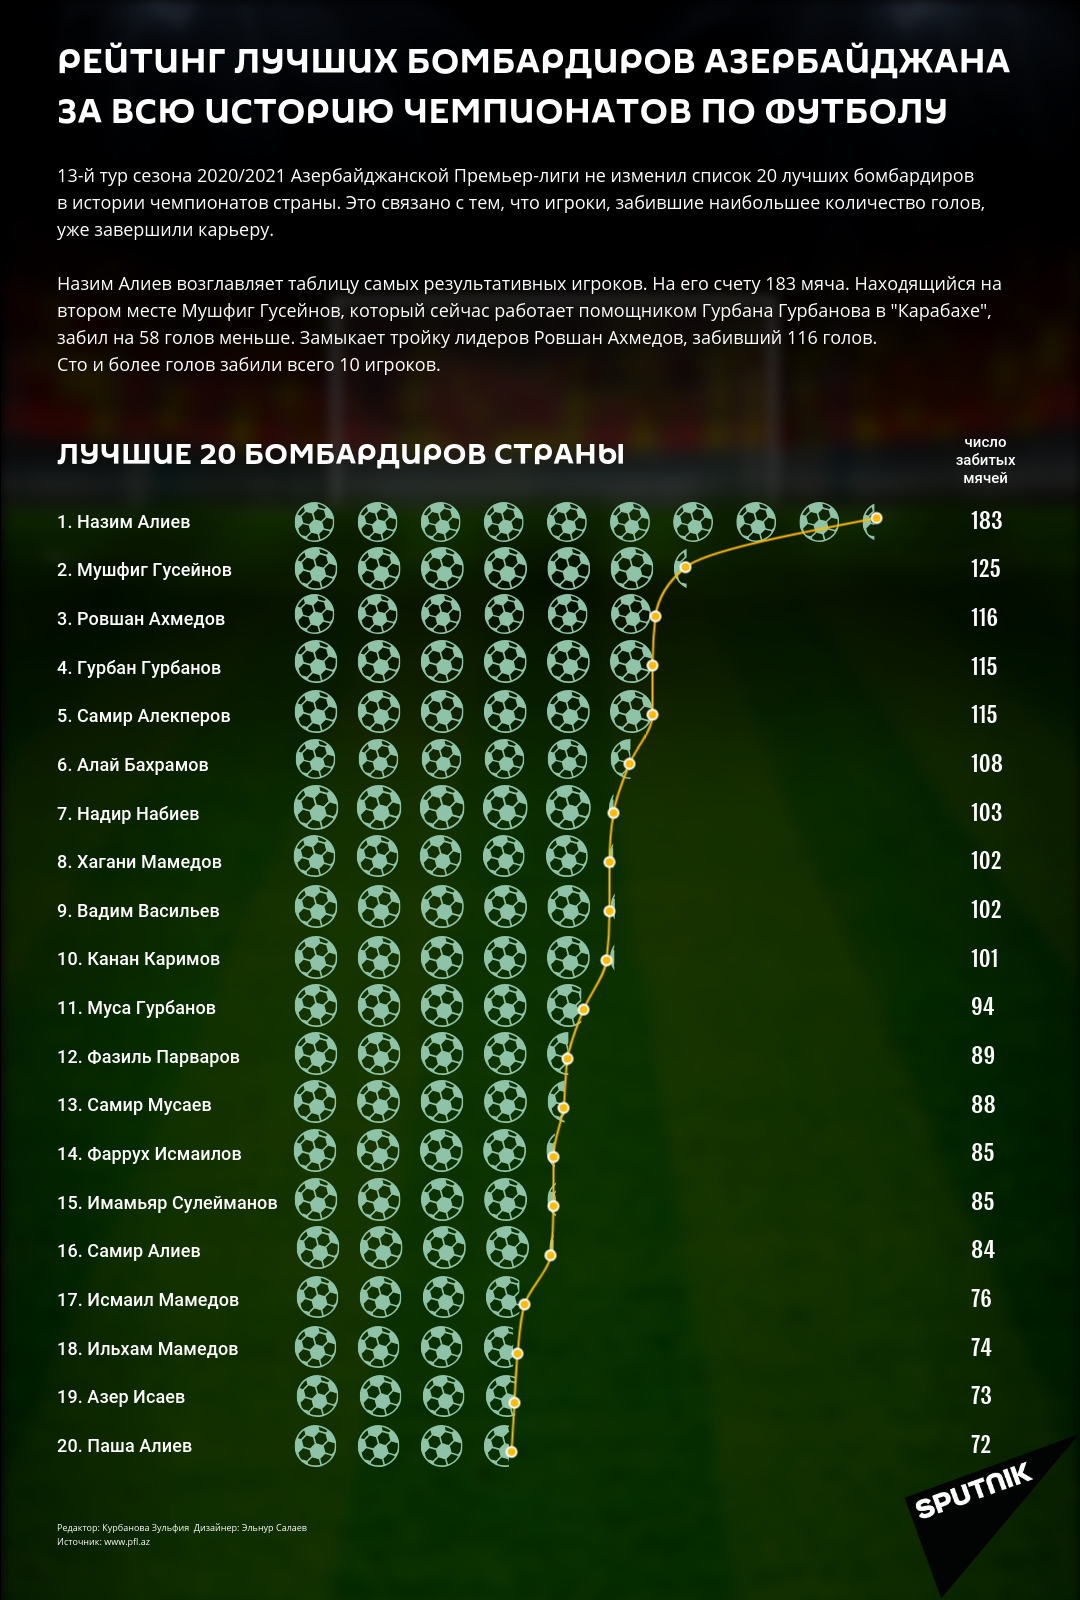 Инфографика: Рейтинг лучших бомбардиров Азербайджана за всю историю чемпионатов по футболу - Sputnik Азербайджан